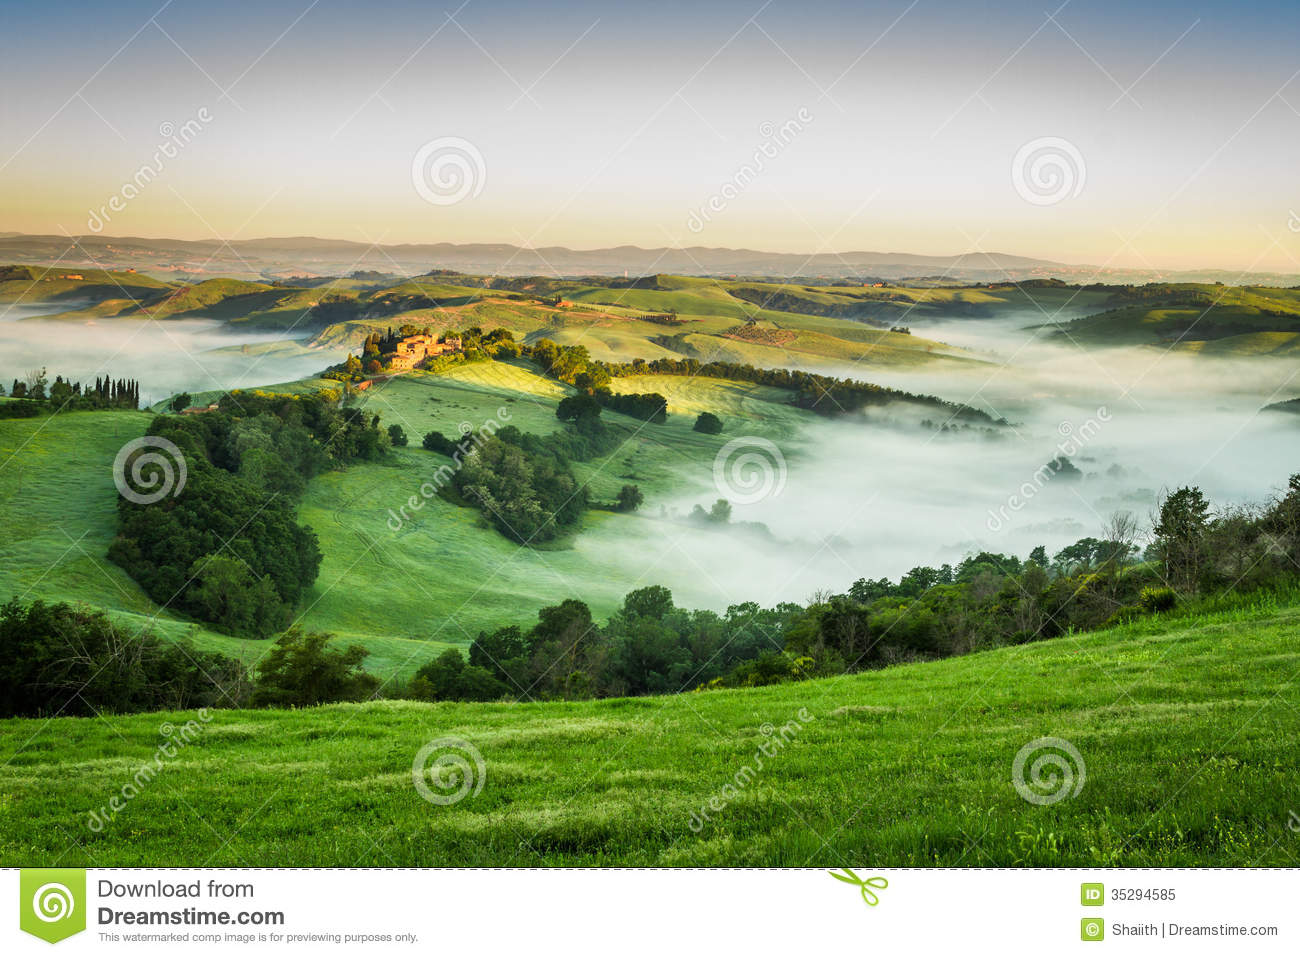 foggy-valley-morning-tuscany-italy-35294585.jpg